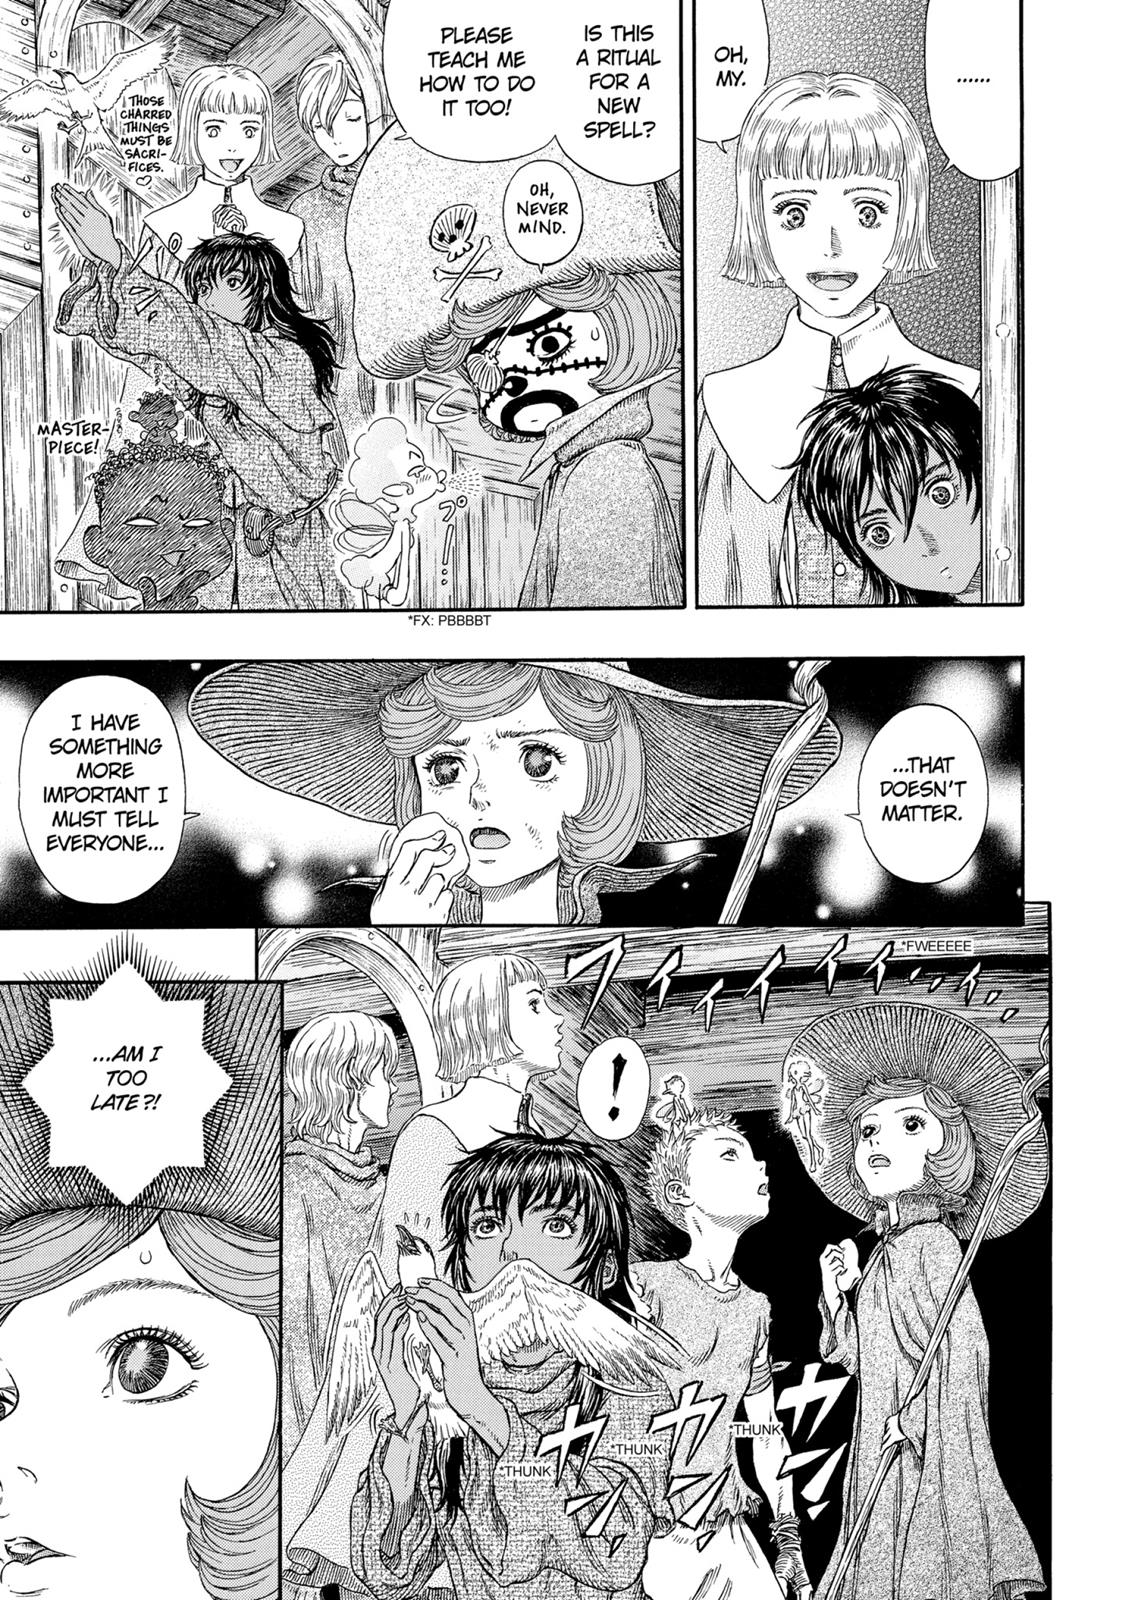 Berserk Manga Chapter 308 image 12